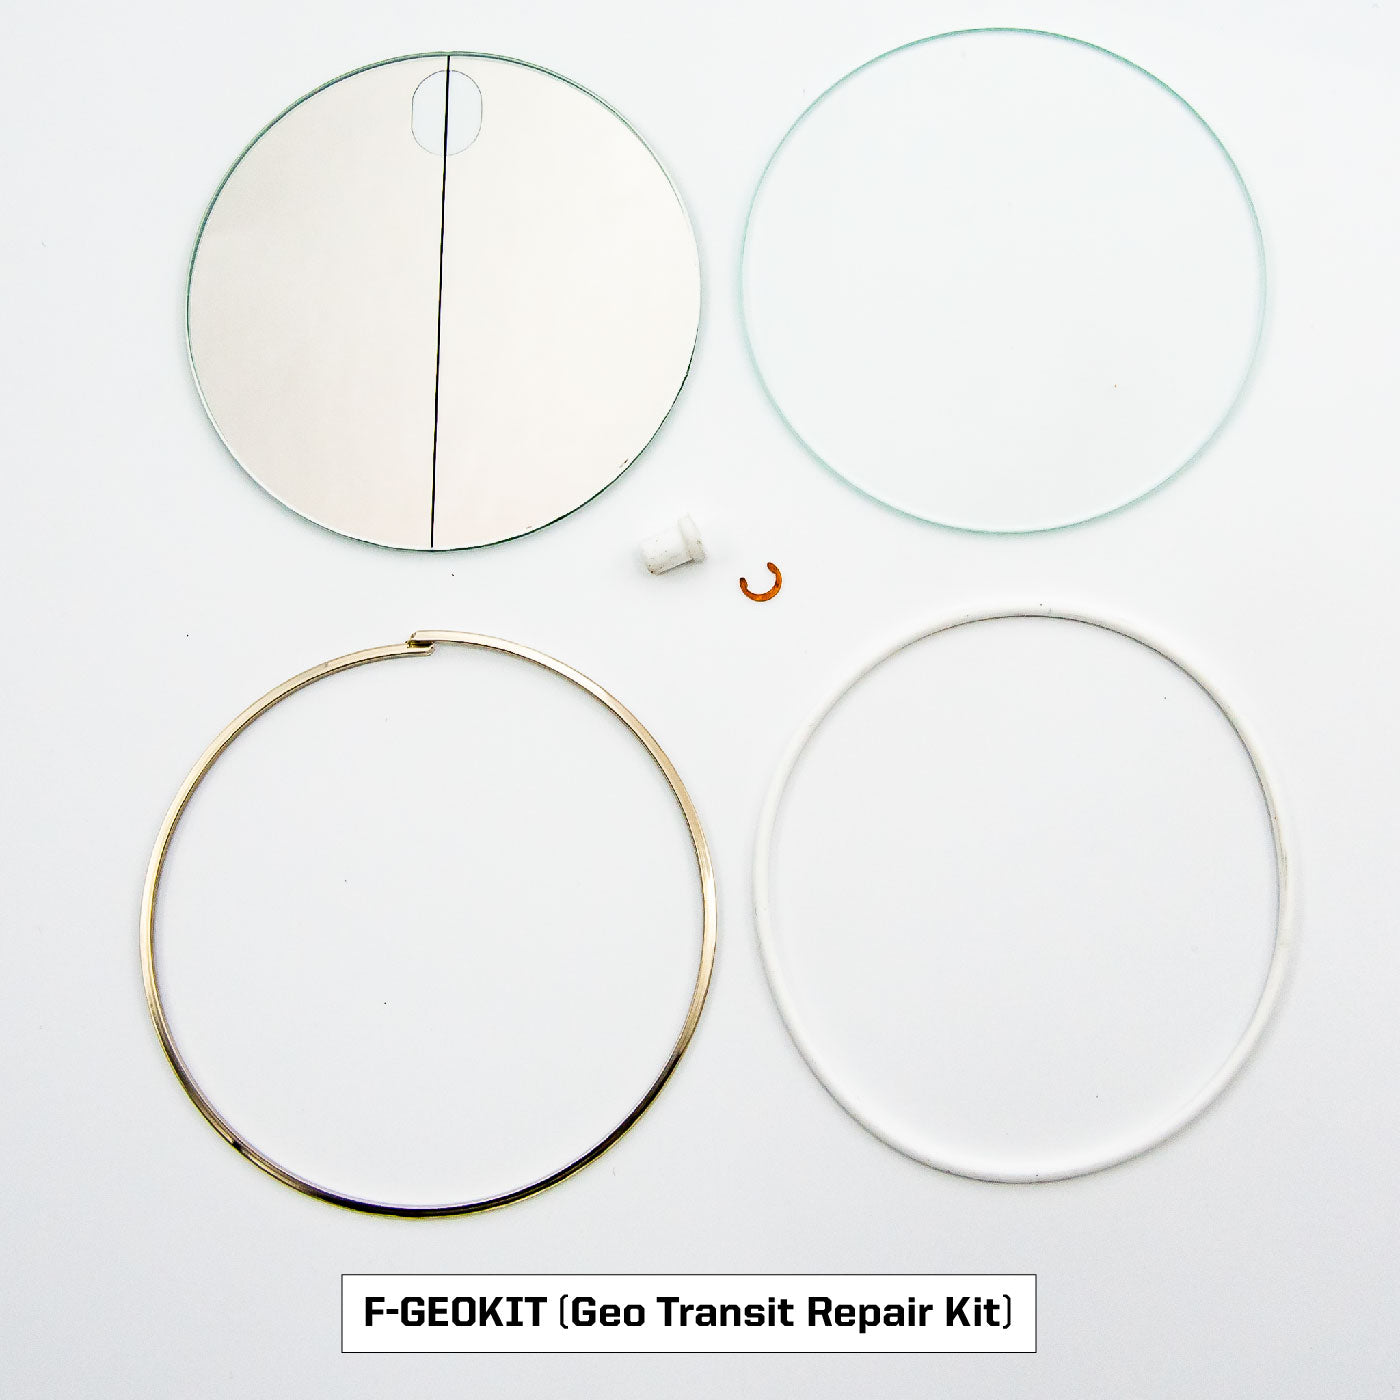 Transit and Omni Repair Kits